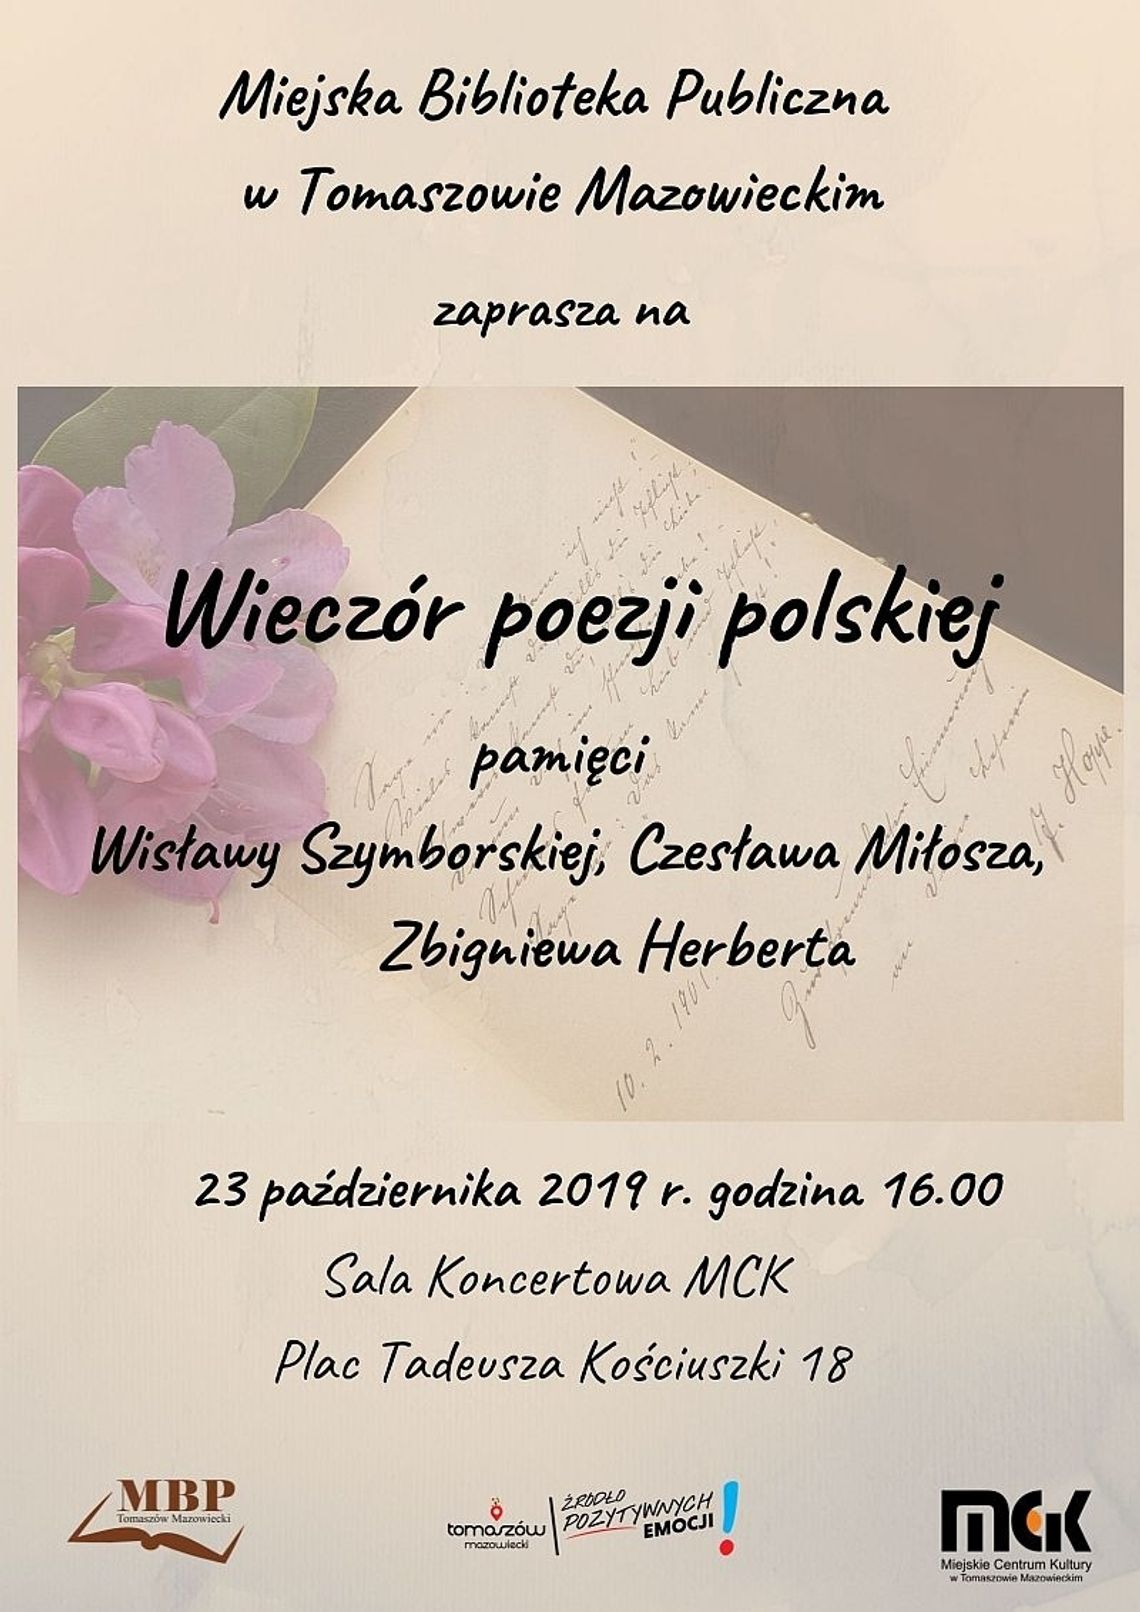 Wieczór poezji polskiej - pamięci Wisławy Szymborskiej, Czesława Miłosza, Zbigniewa Herberta